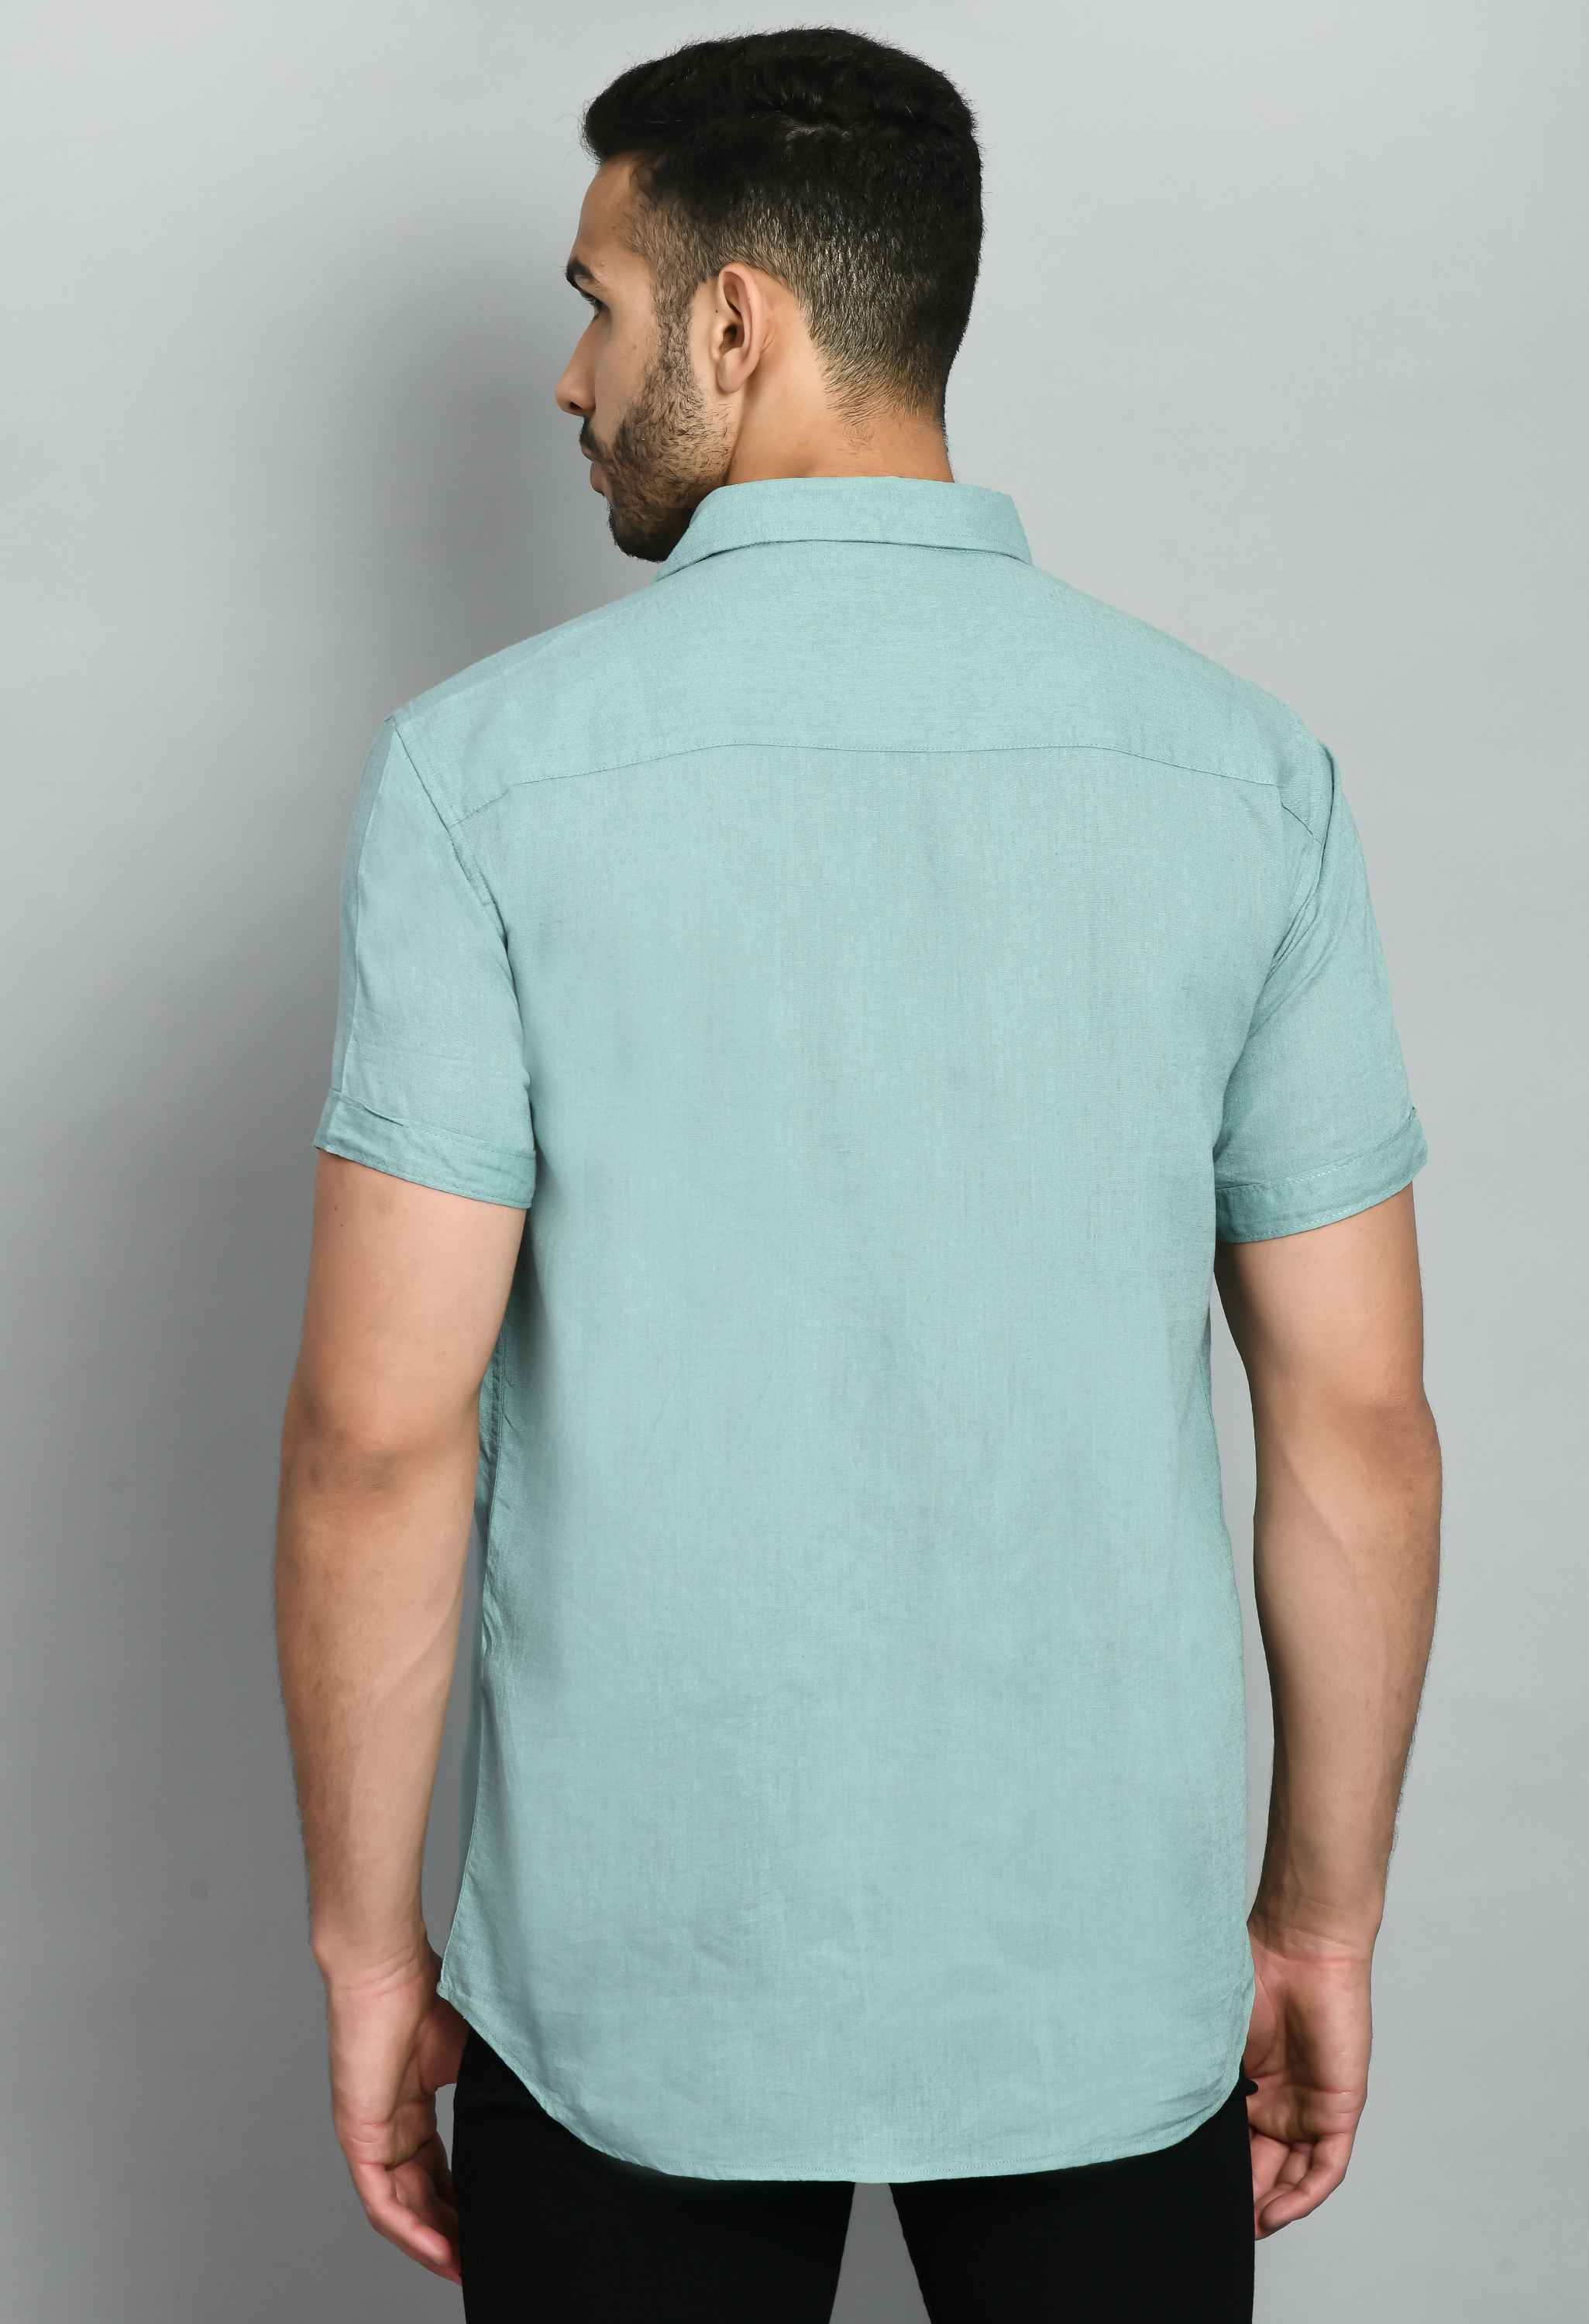 Basic Mint Green Linen Casual Shirt